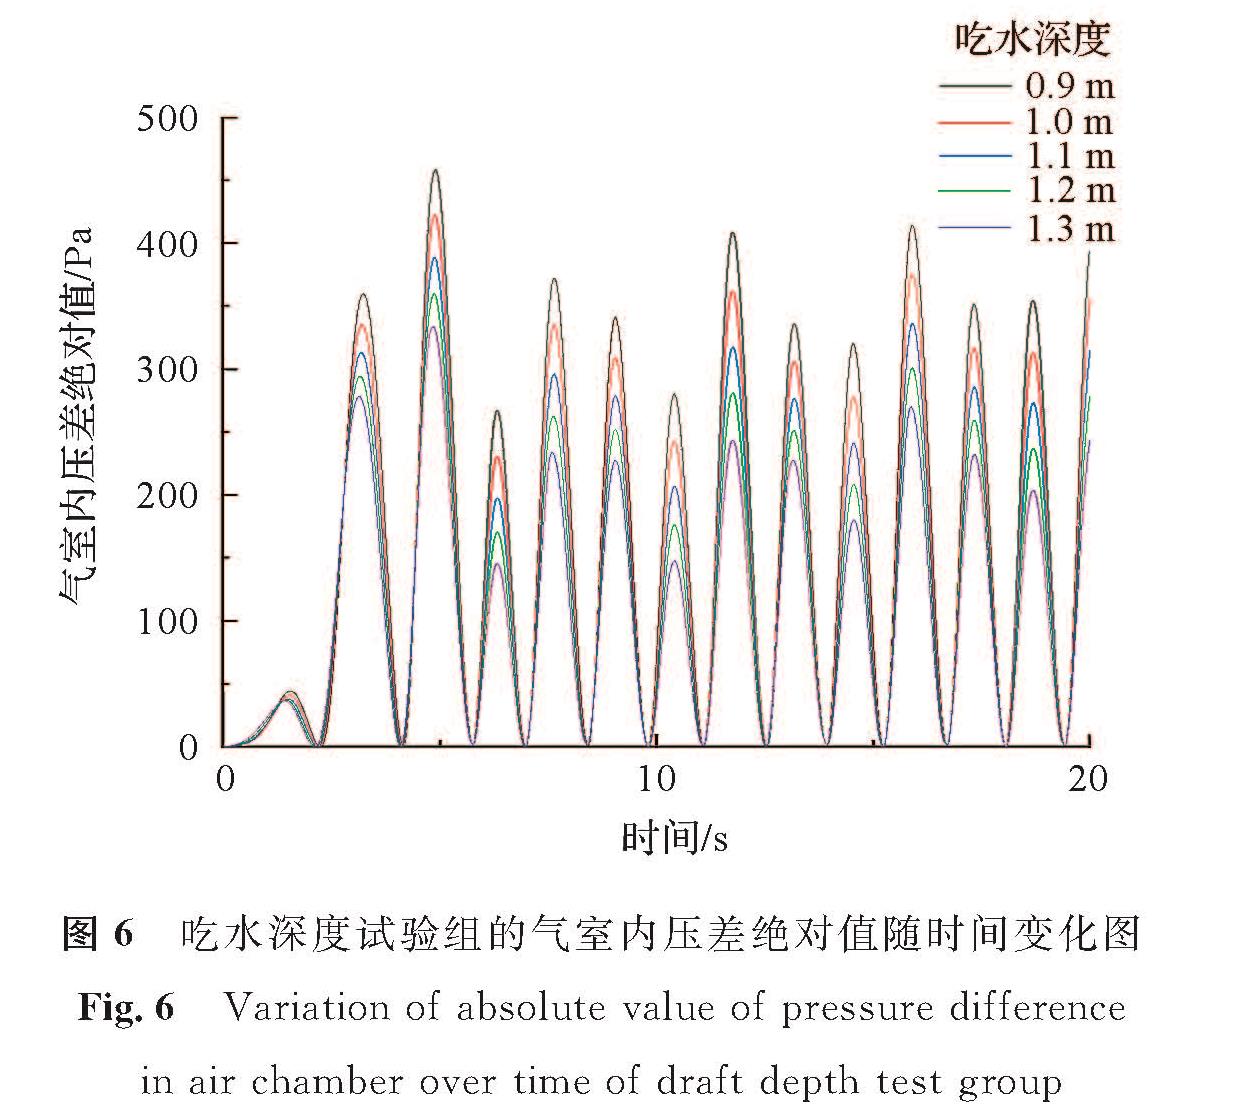 图6 吃水深度试验组的气室内压差绝对值随时间变化图<br/>Fig.6 Variation of absolute value of pressure difference in air chamber over time of draft depth test group